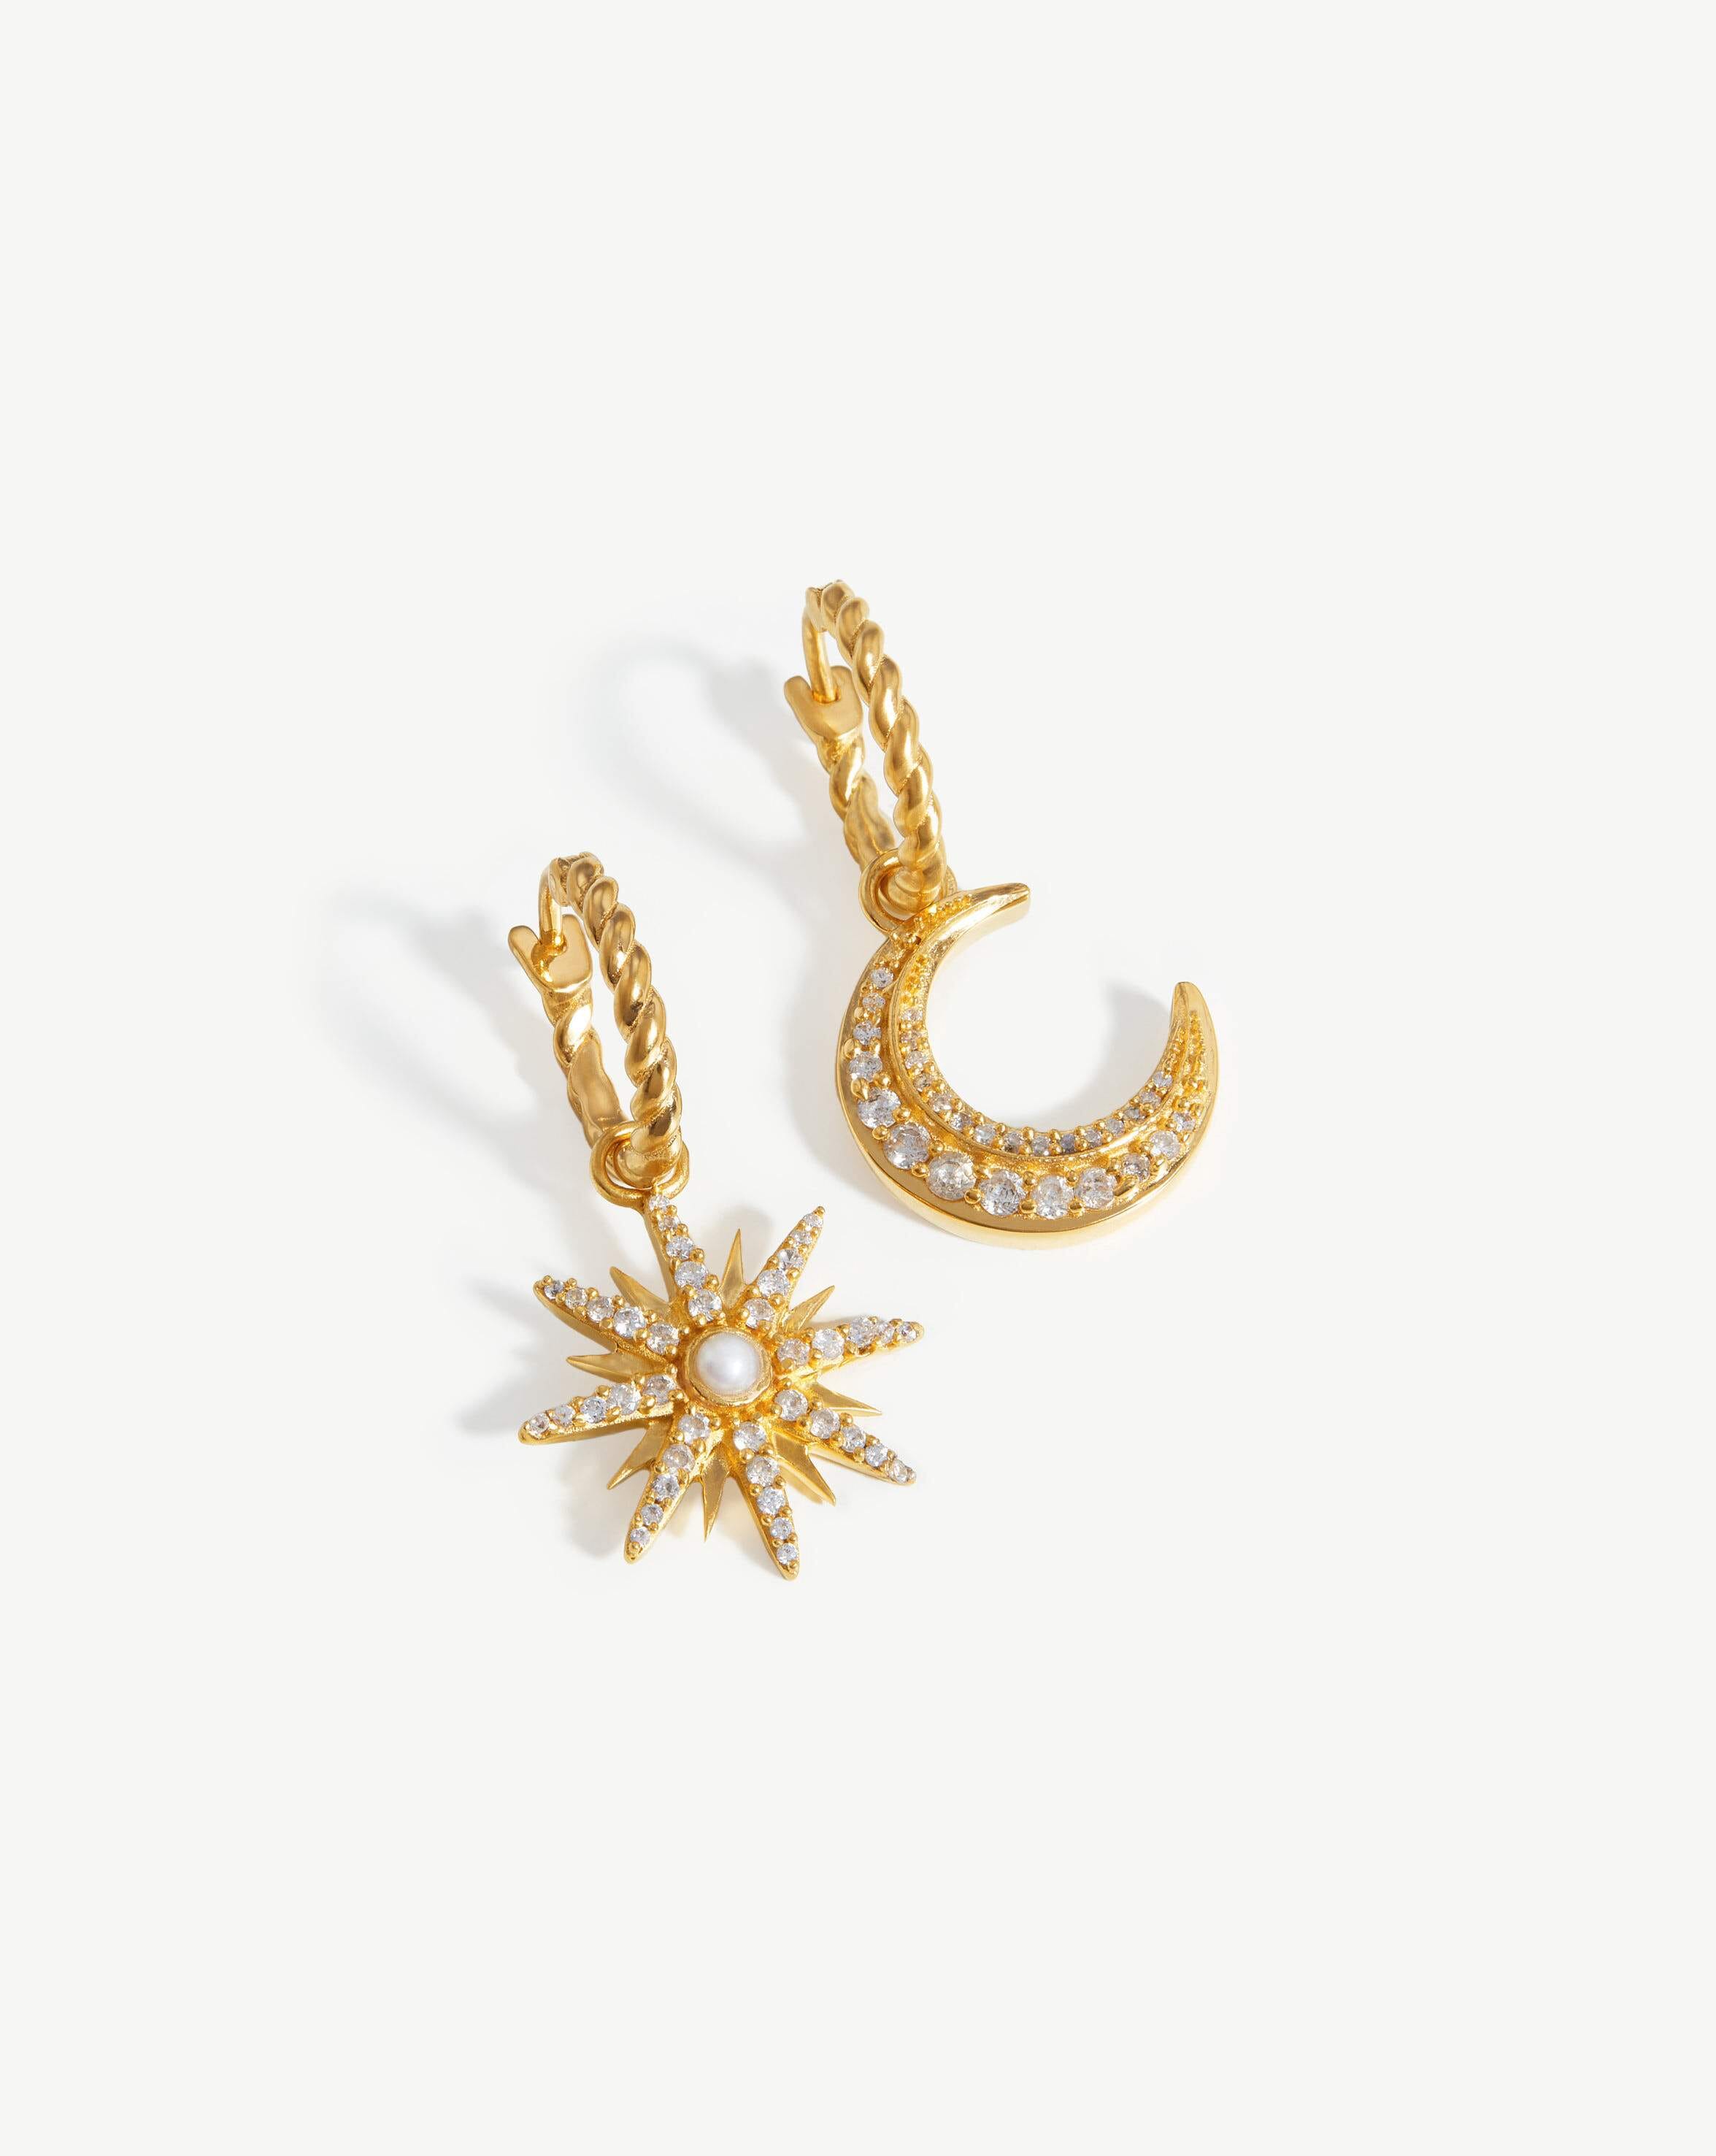 Harris Reed Moonlight Pearl Hoop Earrings | 18ct Gold Plated/Pearl Earrings Missoma 